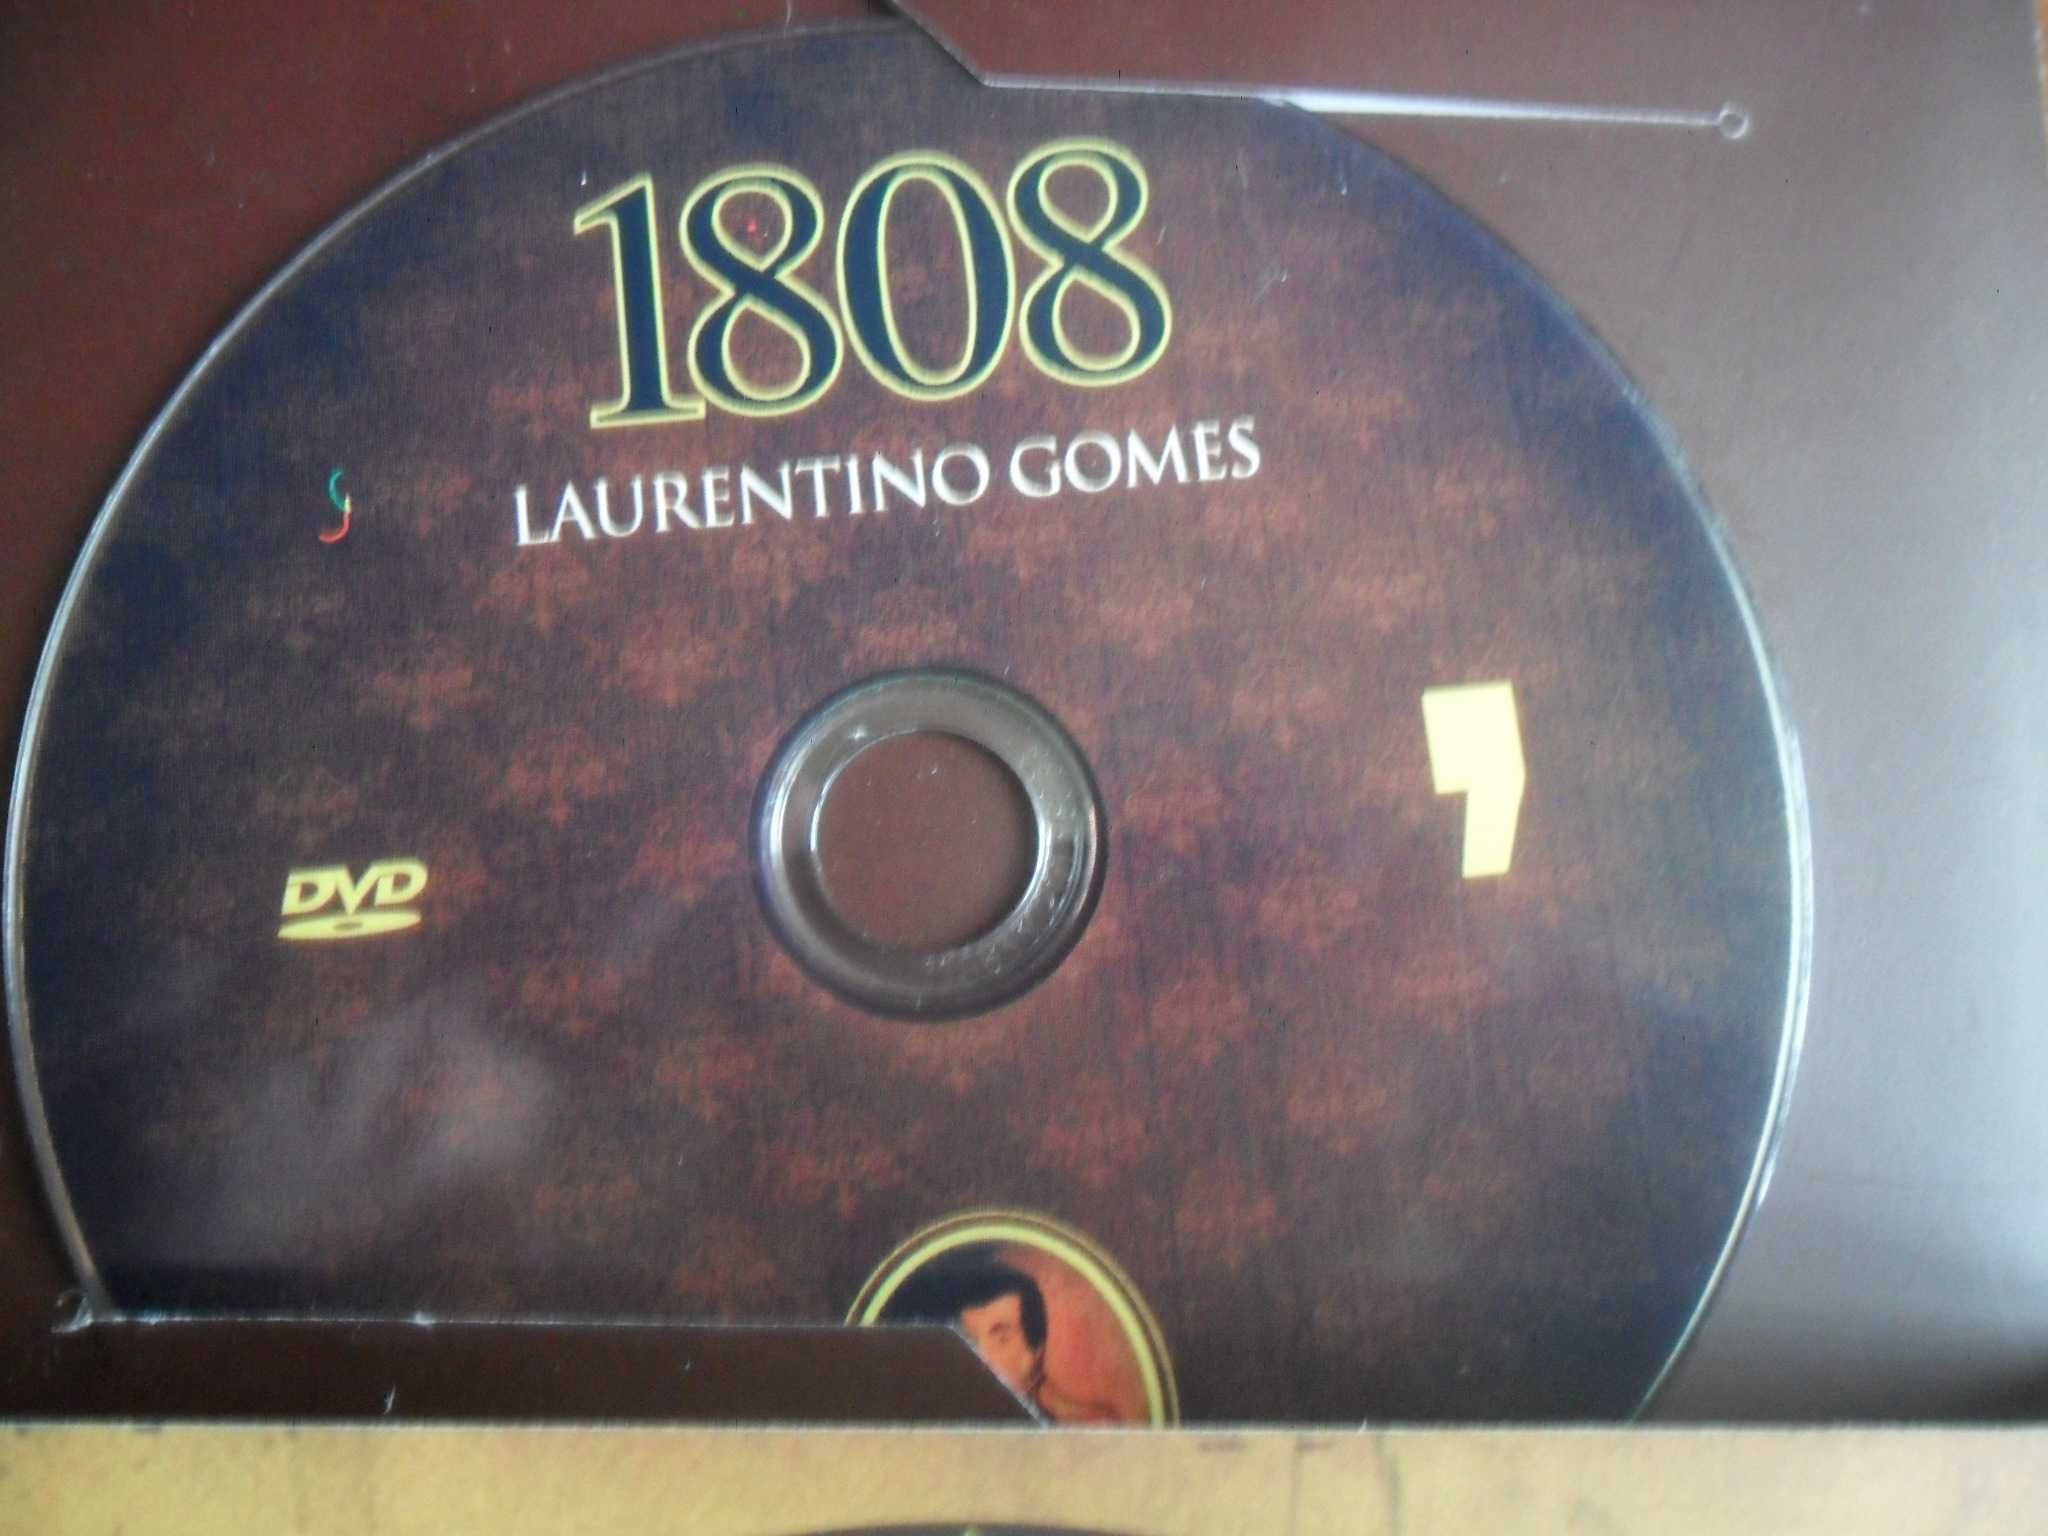 "1808" 2 livros - Acompanha DVD de Laurentino Gomes